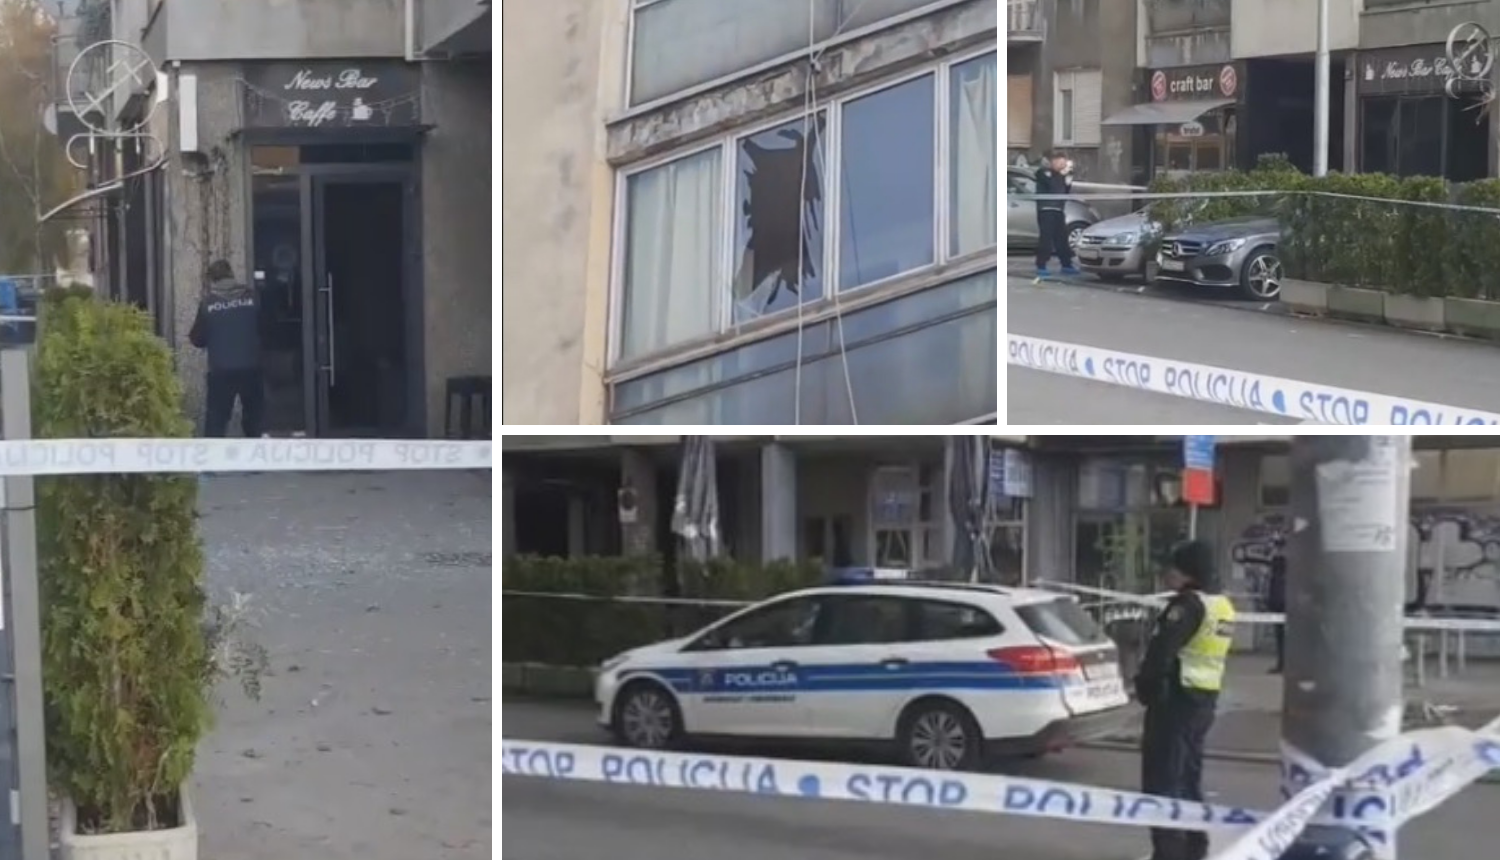 Eksplodirala bomba u Zagrebu: 'Prije mjesec dana tu su pucali'